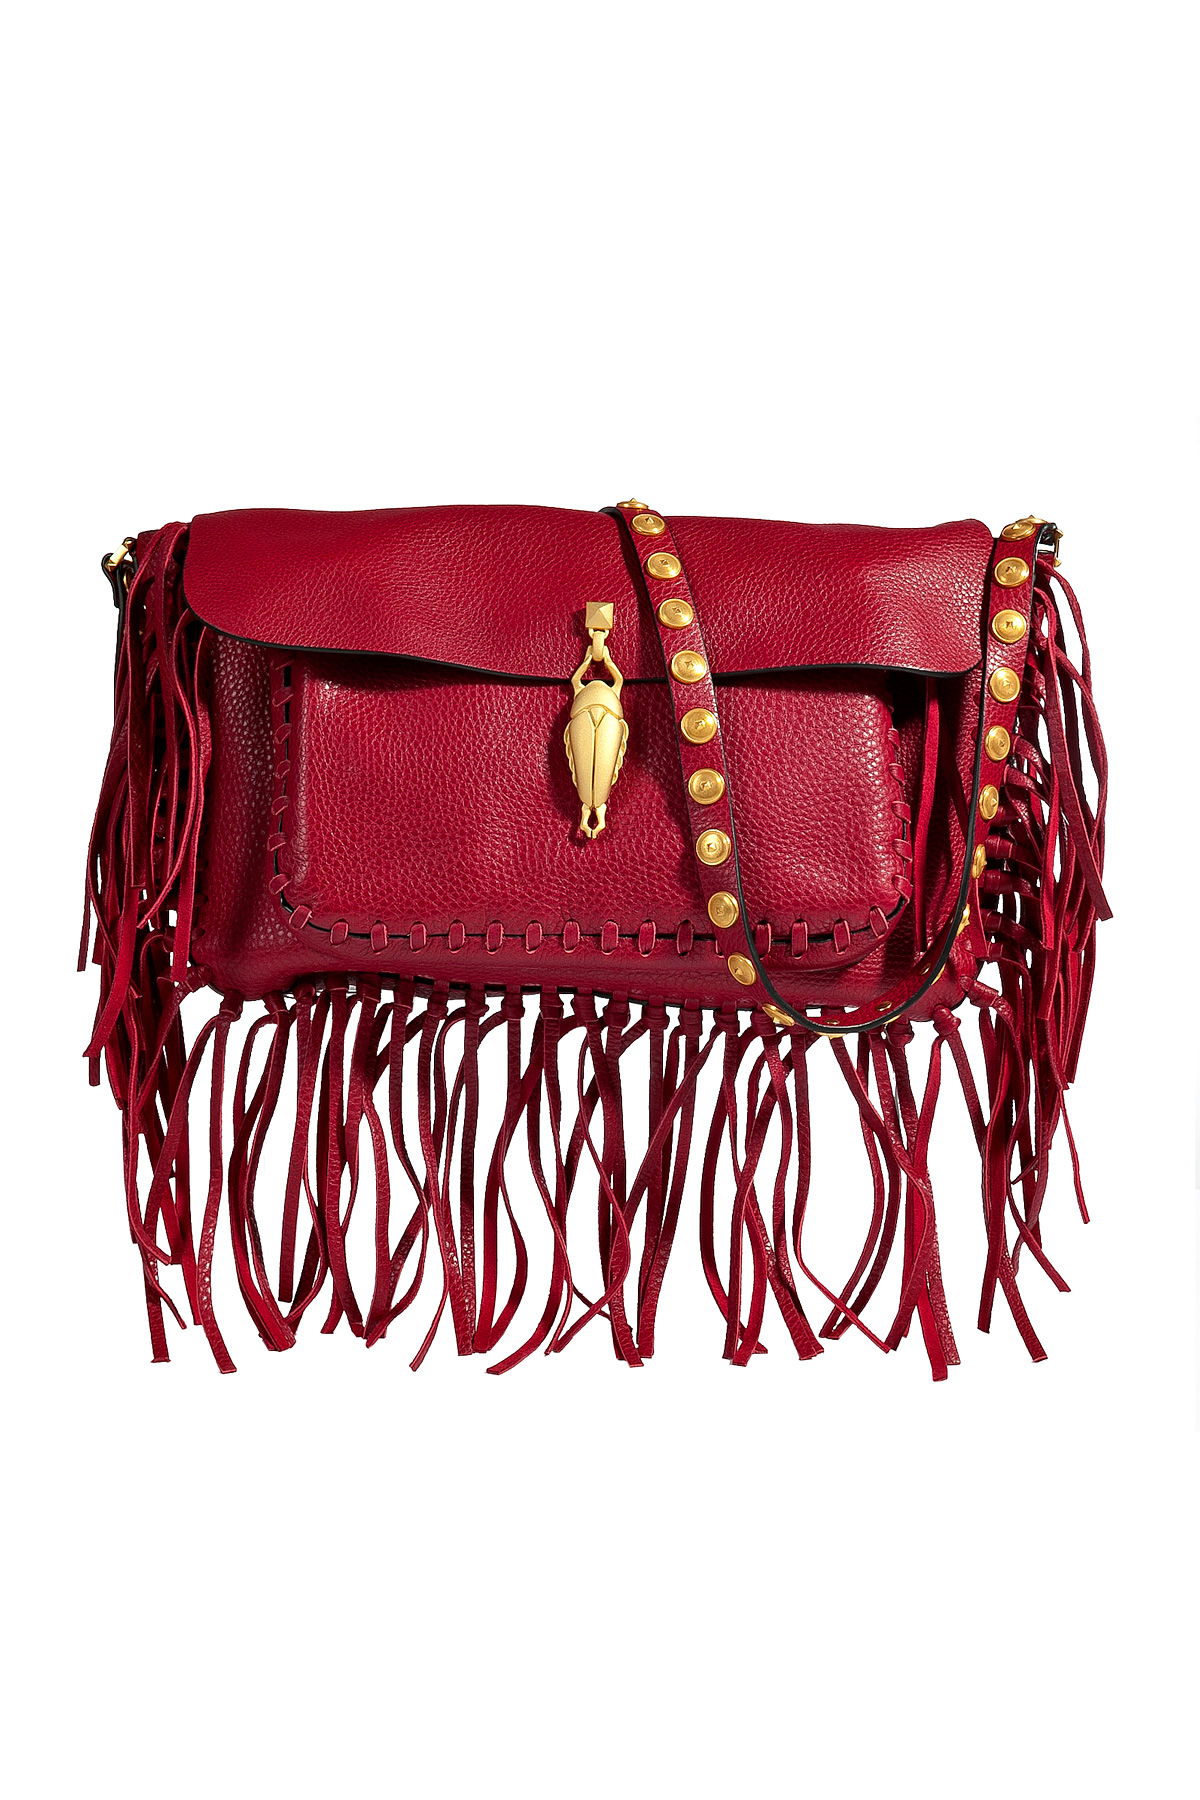 Valentino Leather Fringe Shoulder Bag in Red | Lyst